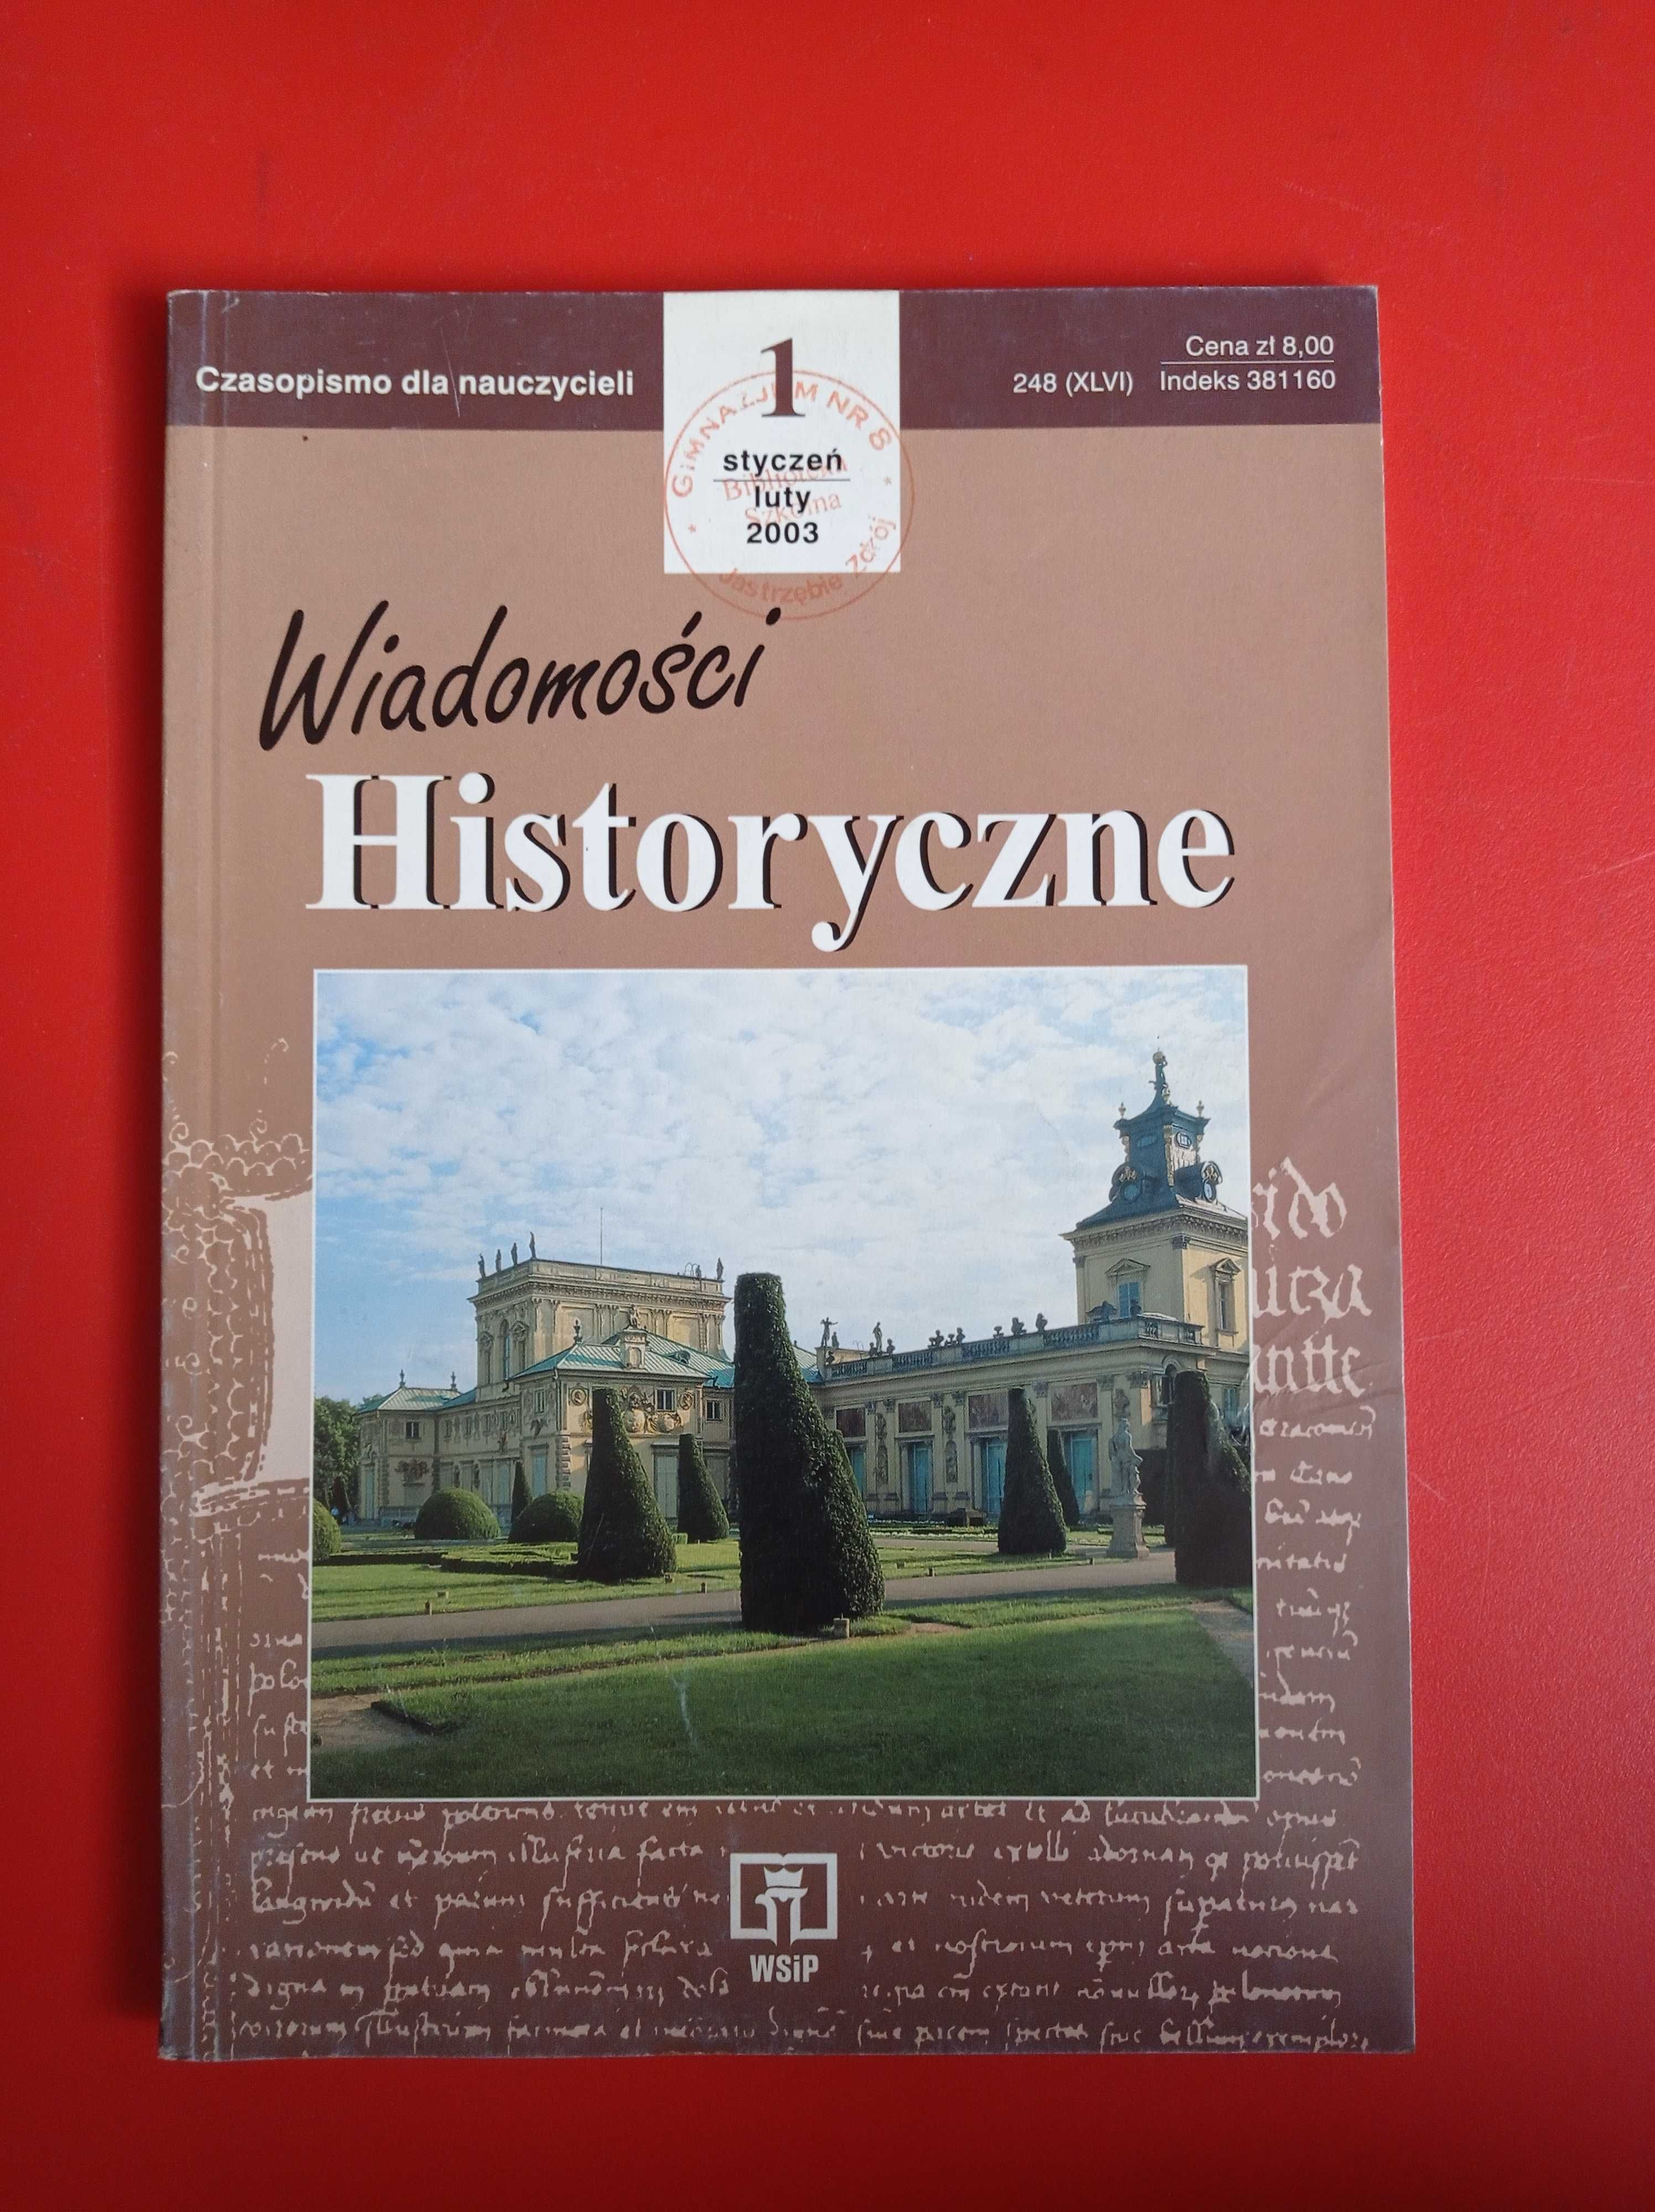 Wiadomości historyczne nr 1 styczeń/luty 2003